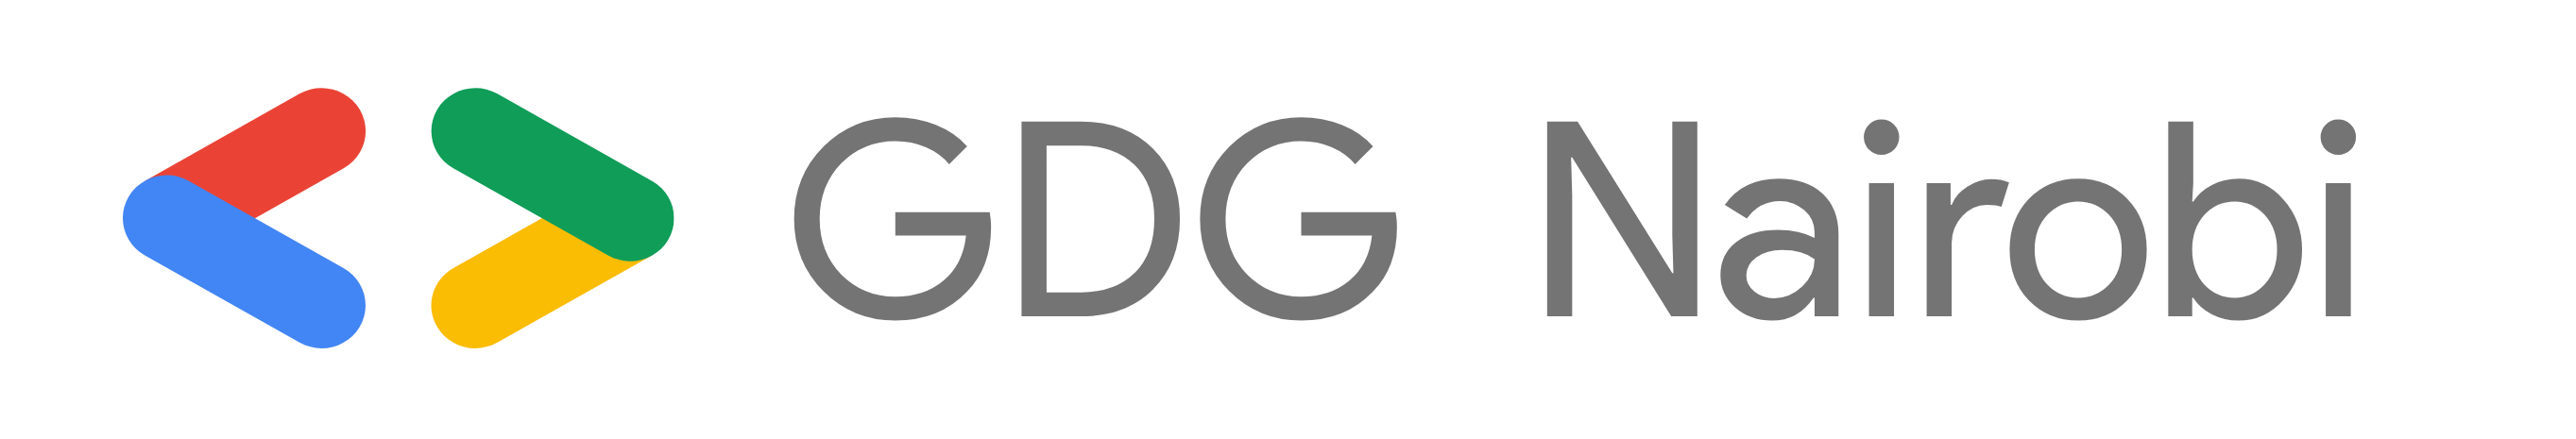 GDG Nairobi Logo